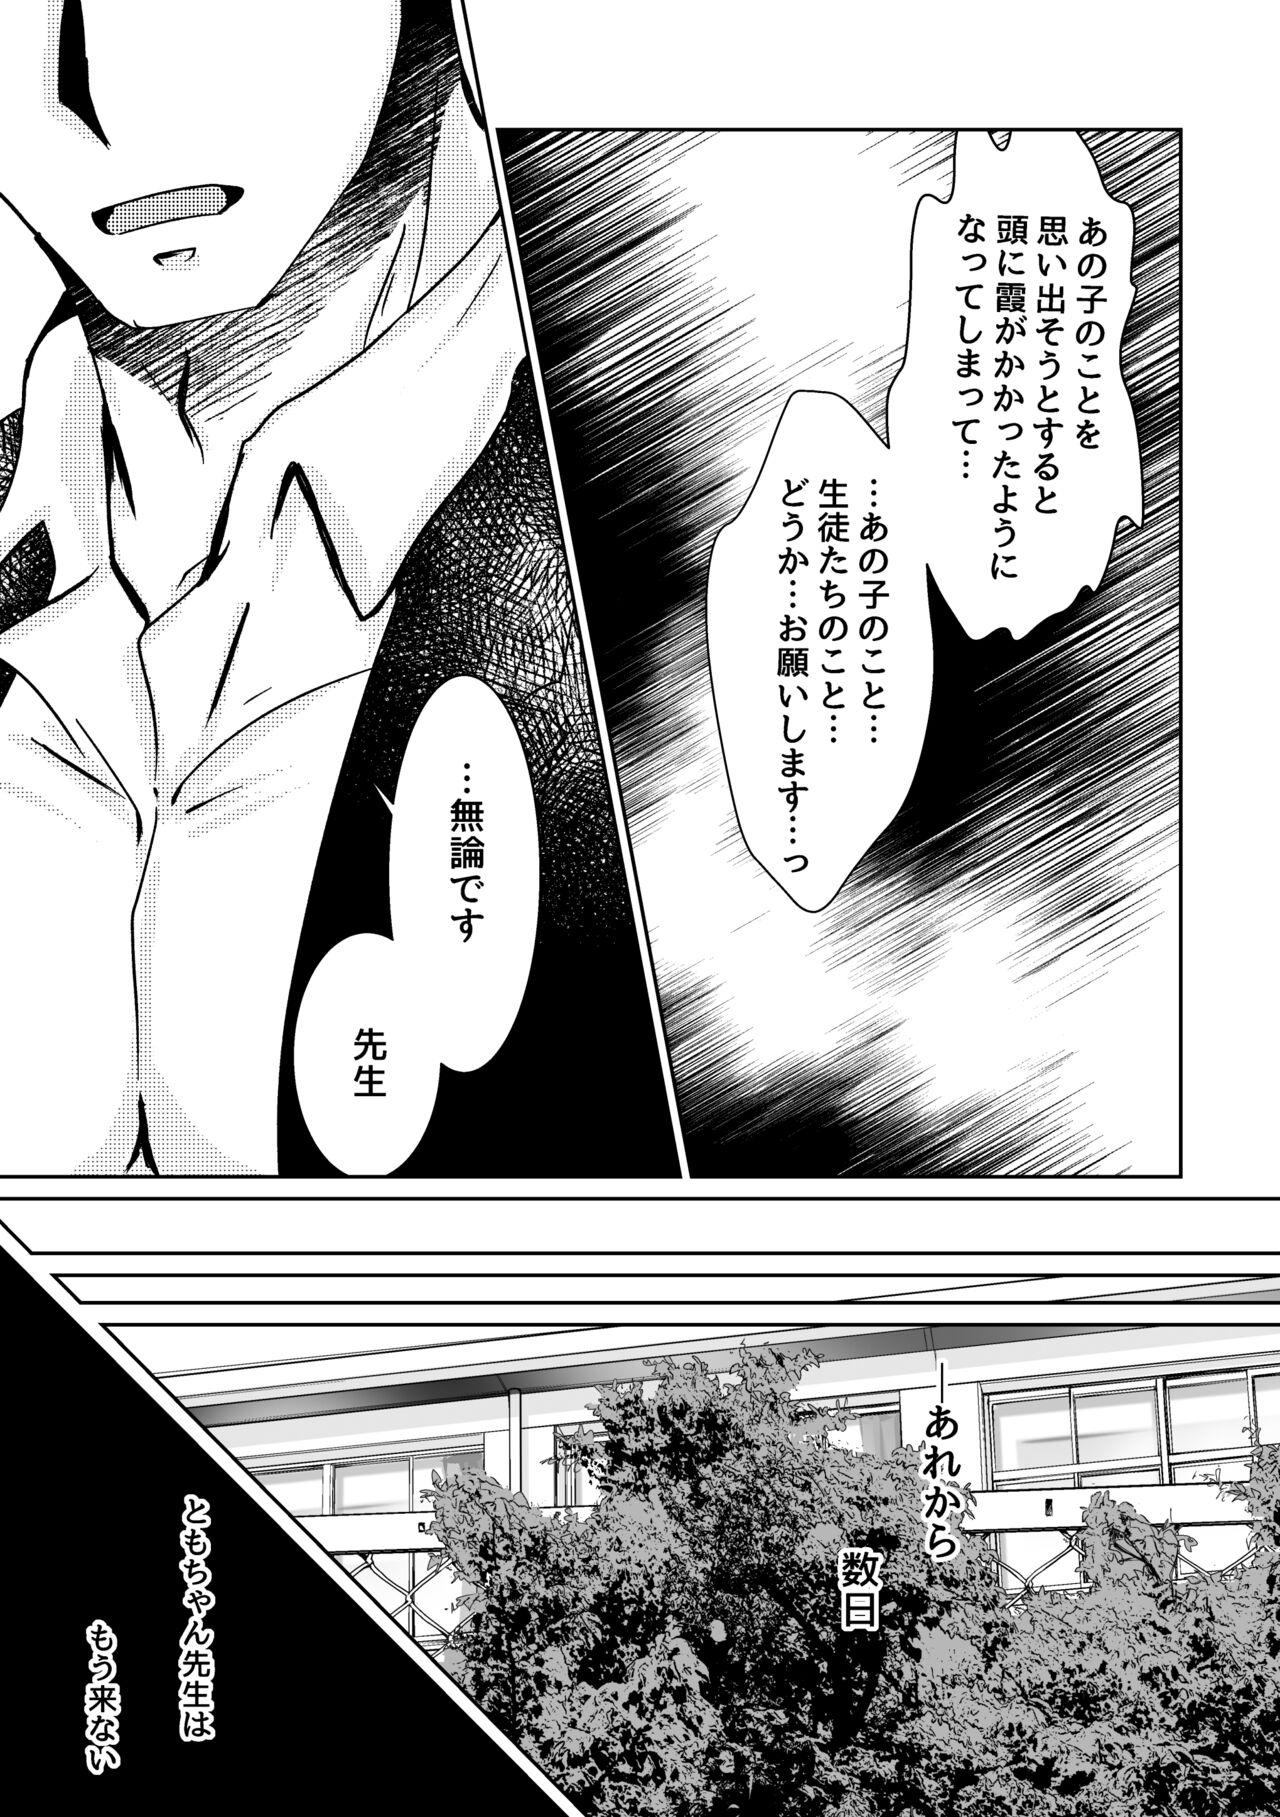 Naija Kareya Yoru no Hanaka Episode 3 Stroking - Page 3